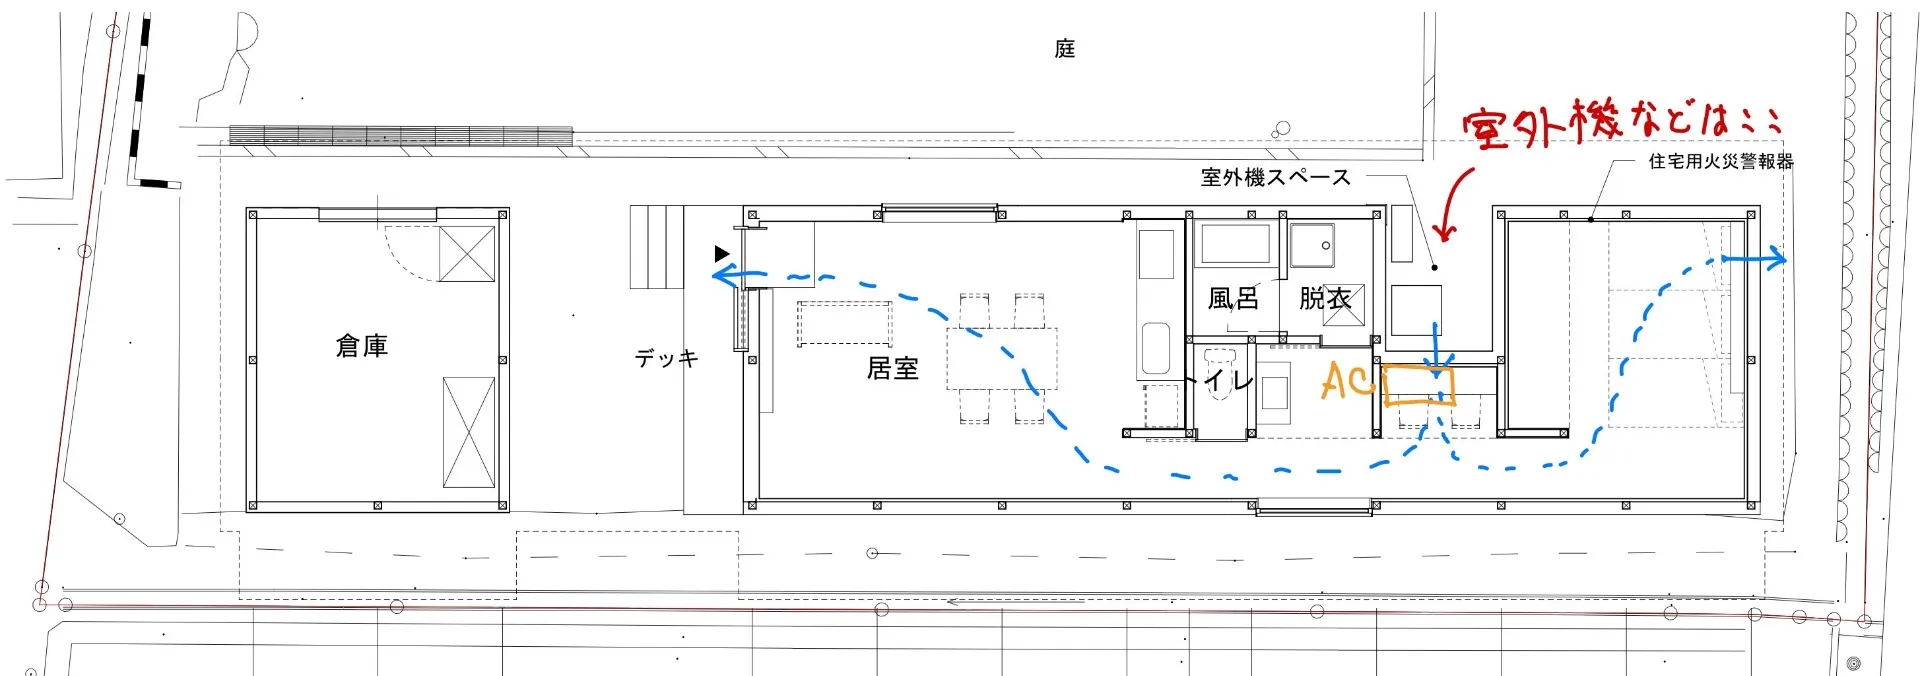 淡路島の設計事務所Fstudioが設計中の戸建て住宅の紹介